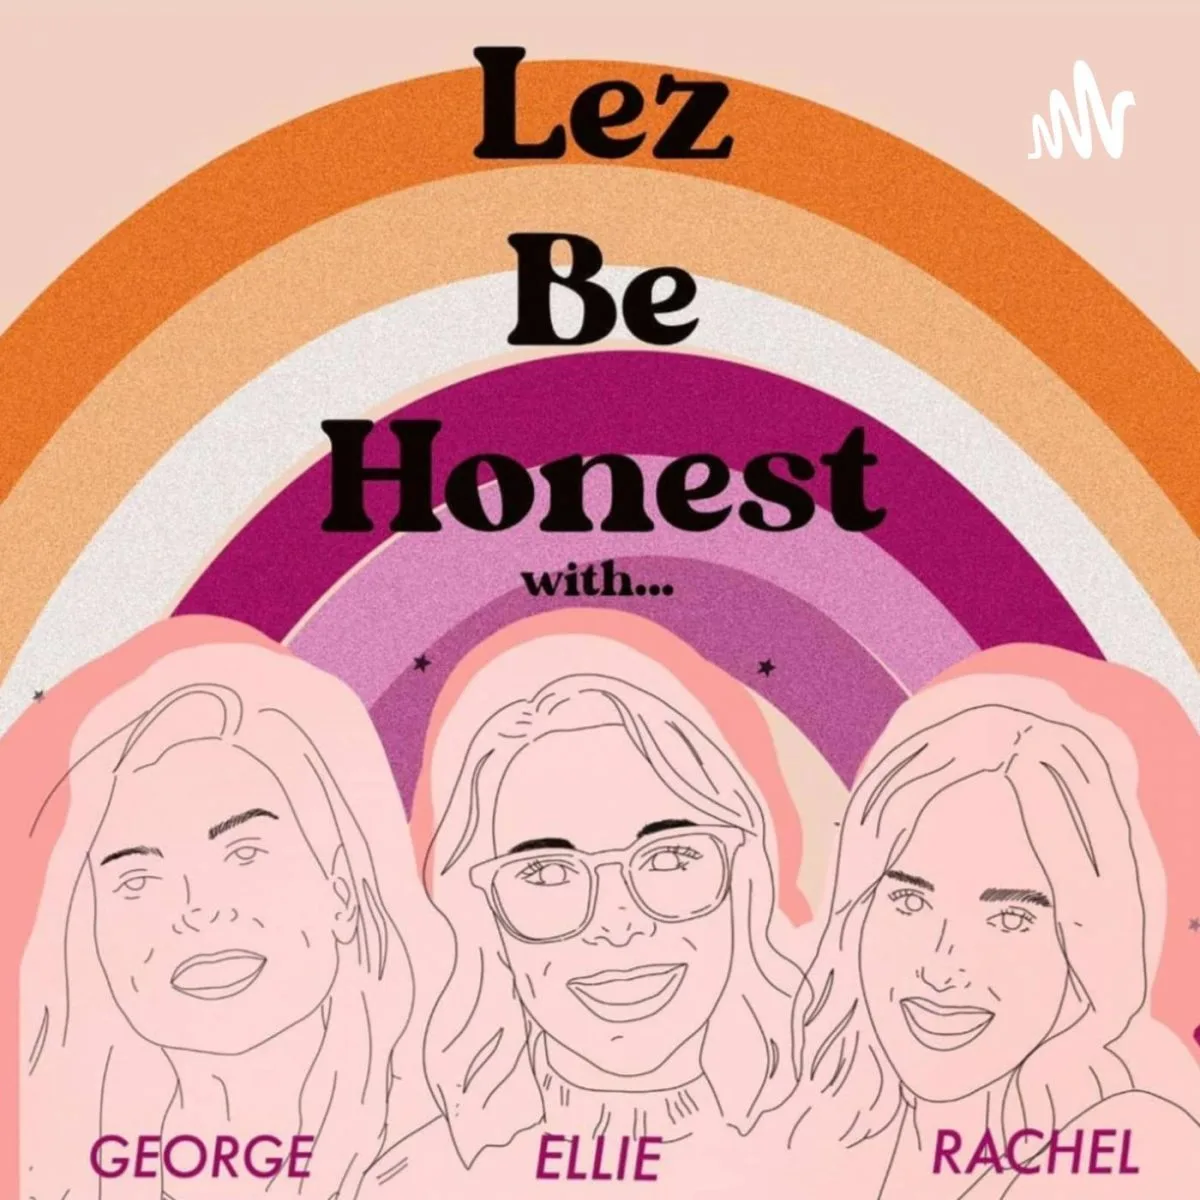 Lez Be Honest by George, Ellie, and Rachel